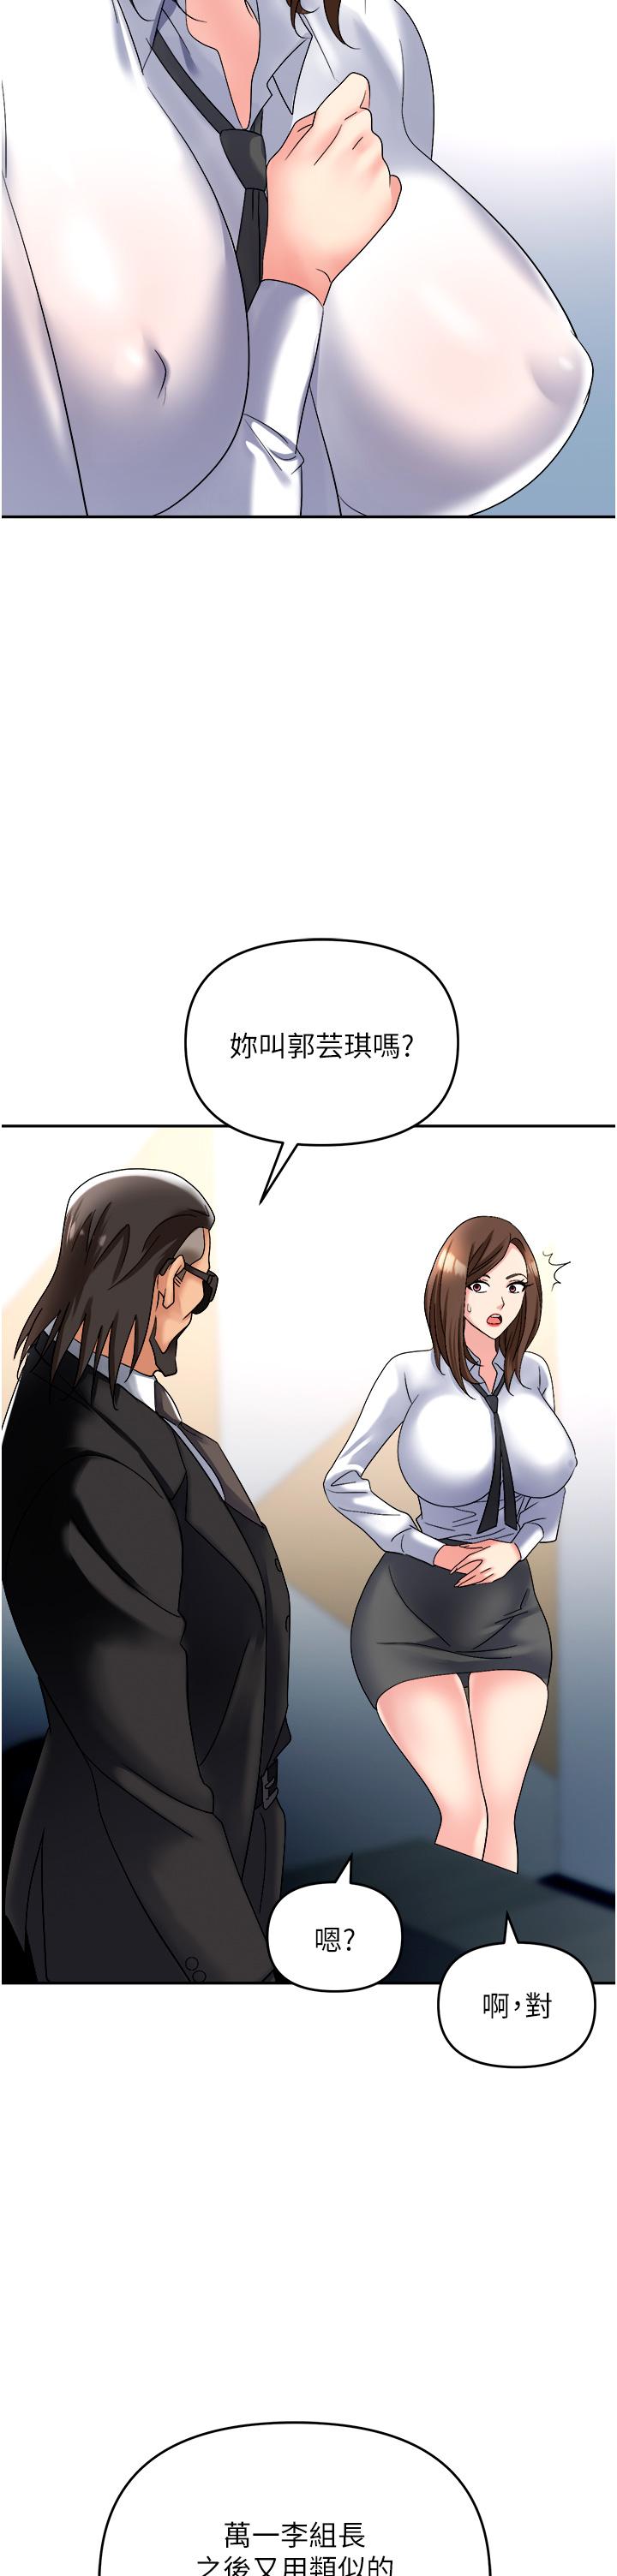 韩国污漫画 職場陷阱 第47话-精液泛滥的女大生鲍鱼 13